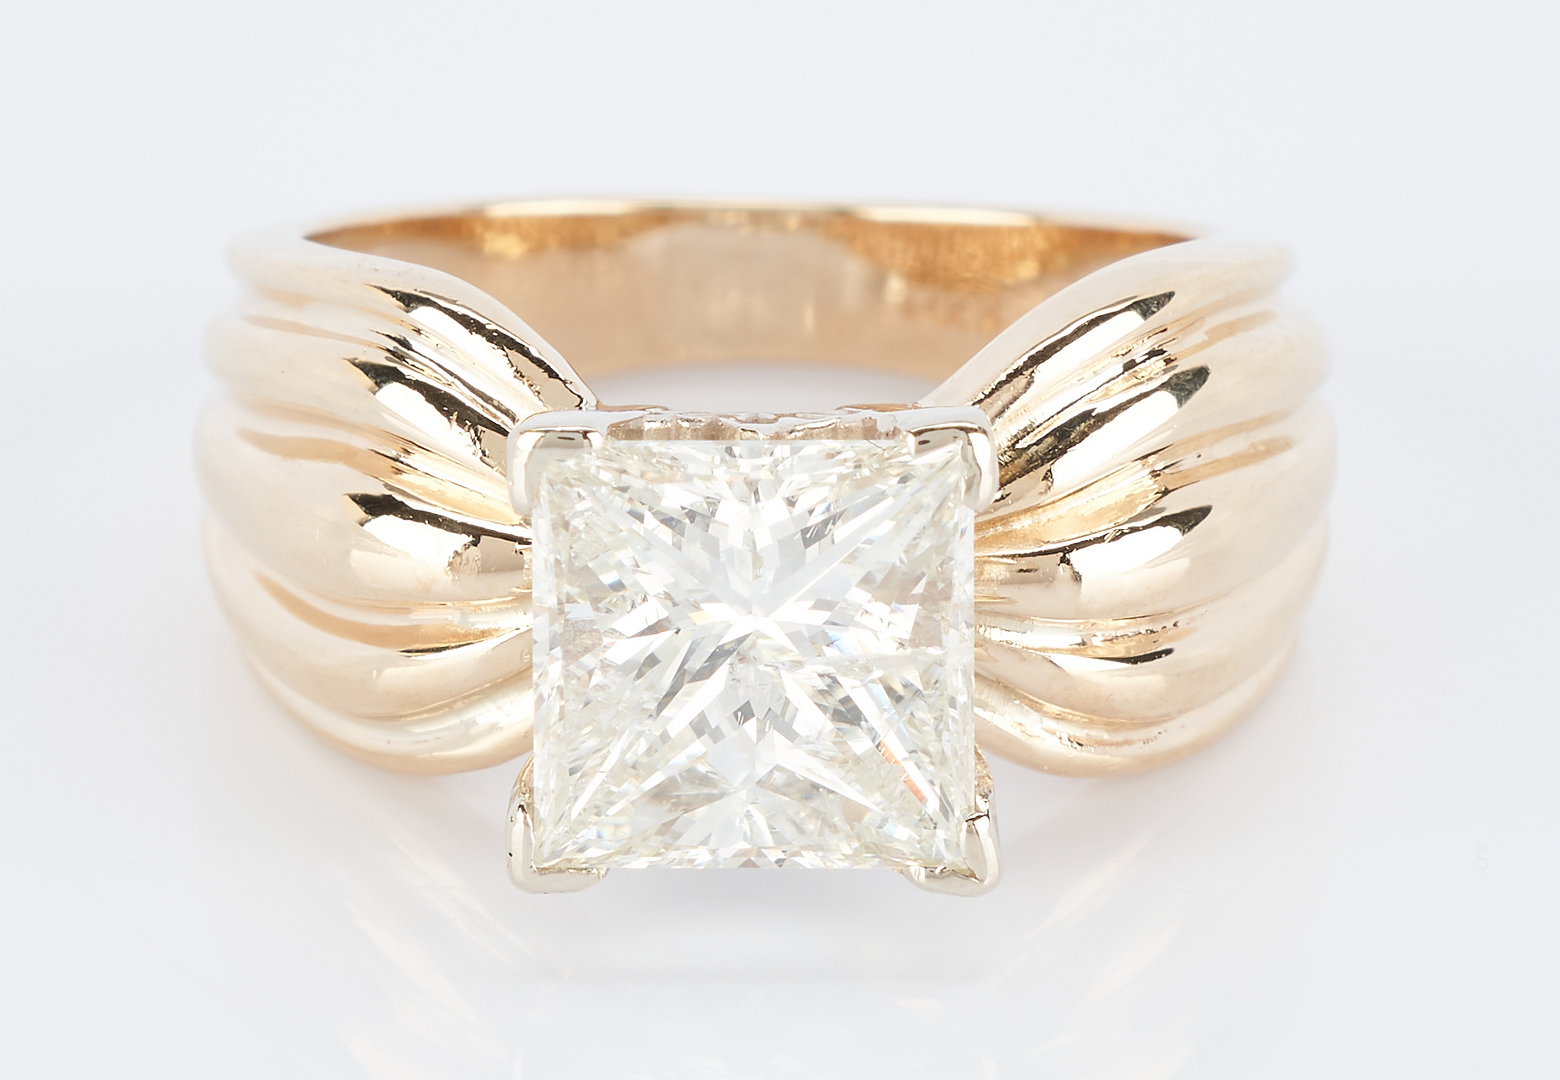 Lot 251: Ladies 14K 3.07 Carat Diamond Ring